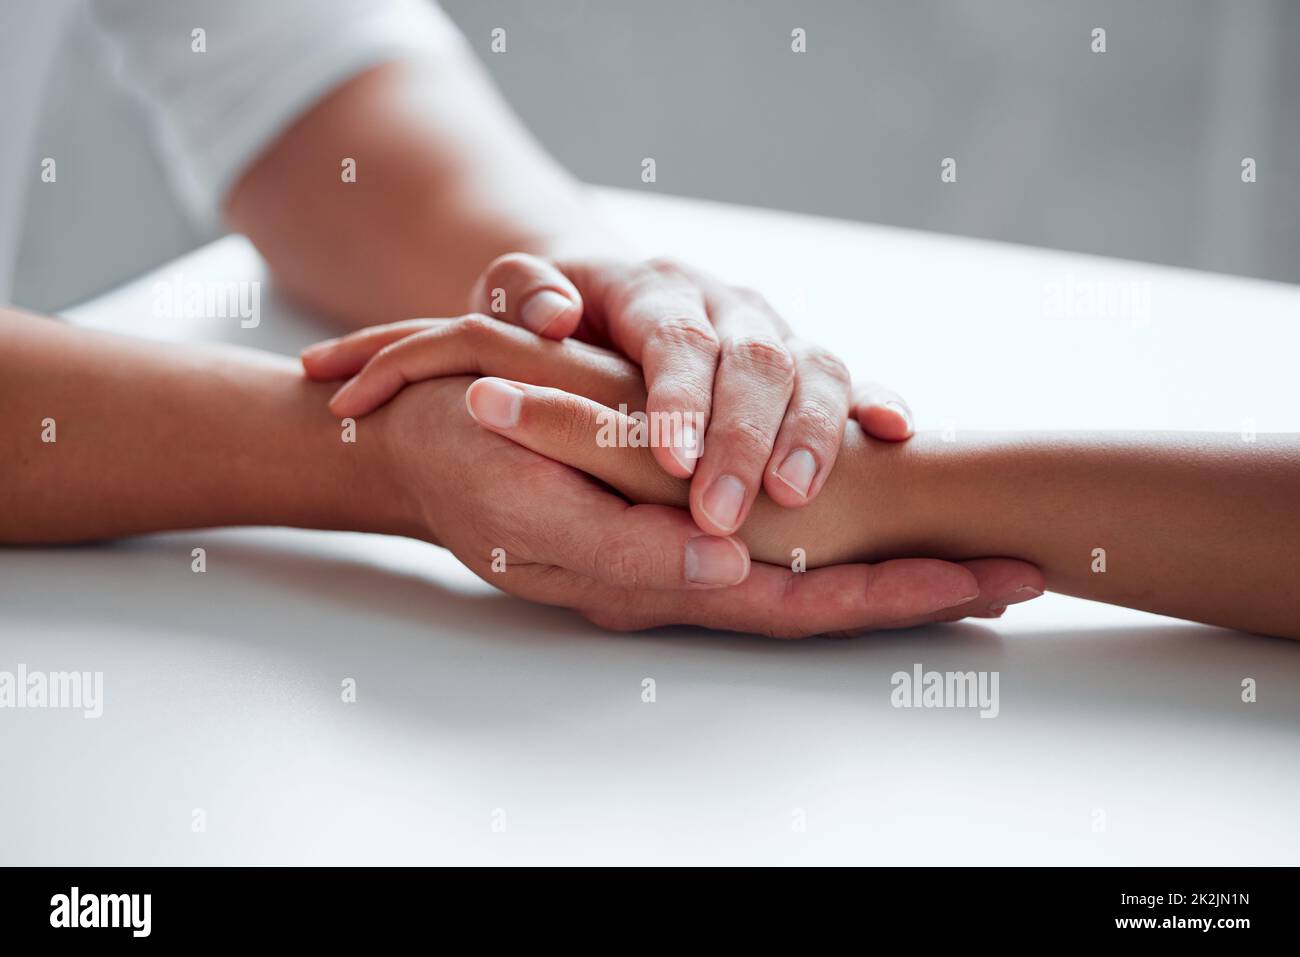 Freundlichkeit kann Leben verändern. Nahaufnahme von zwei nicht erkennbaren Personen, die sich die Hände hielten. Stockfoto